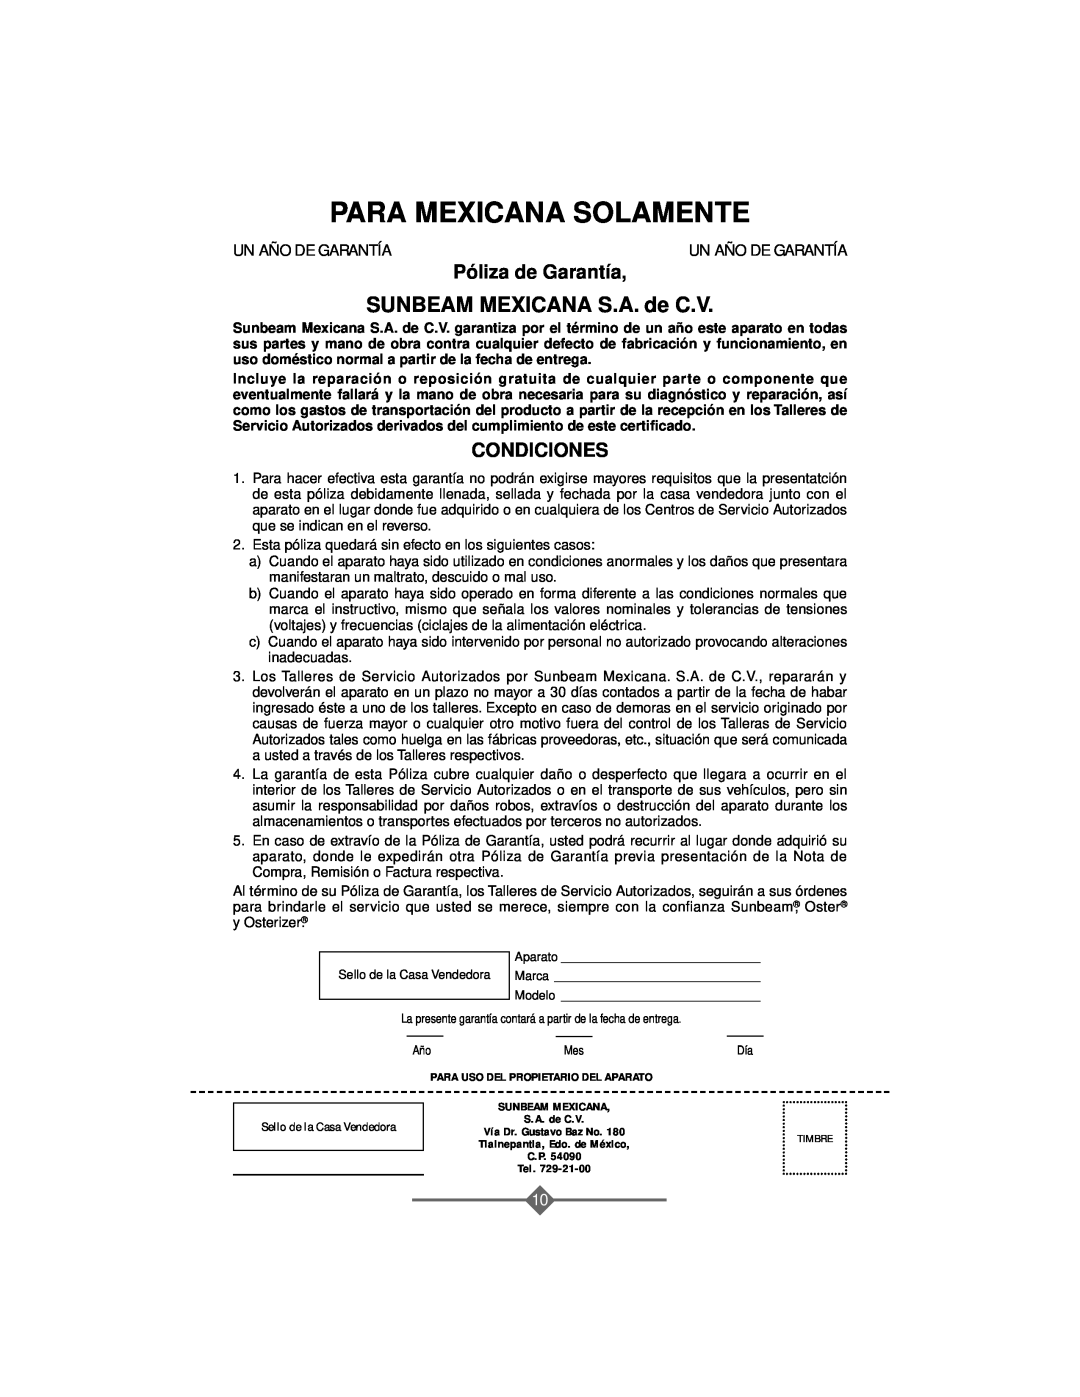 Sunbeam 3208 instruction manual Para Mexicana Solamente, SUNBEAM MEXICANA S.A. de C.V, Póliza de Garantía, Condiciones 